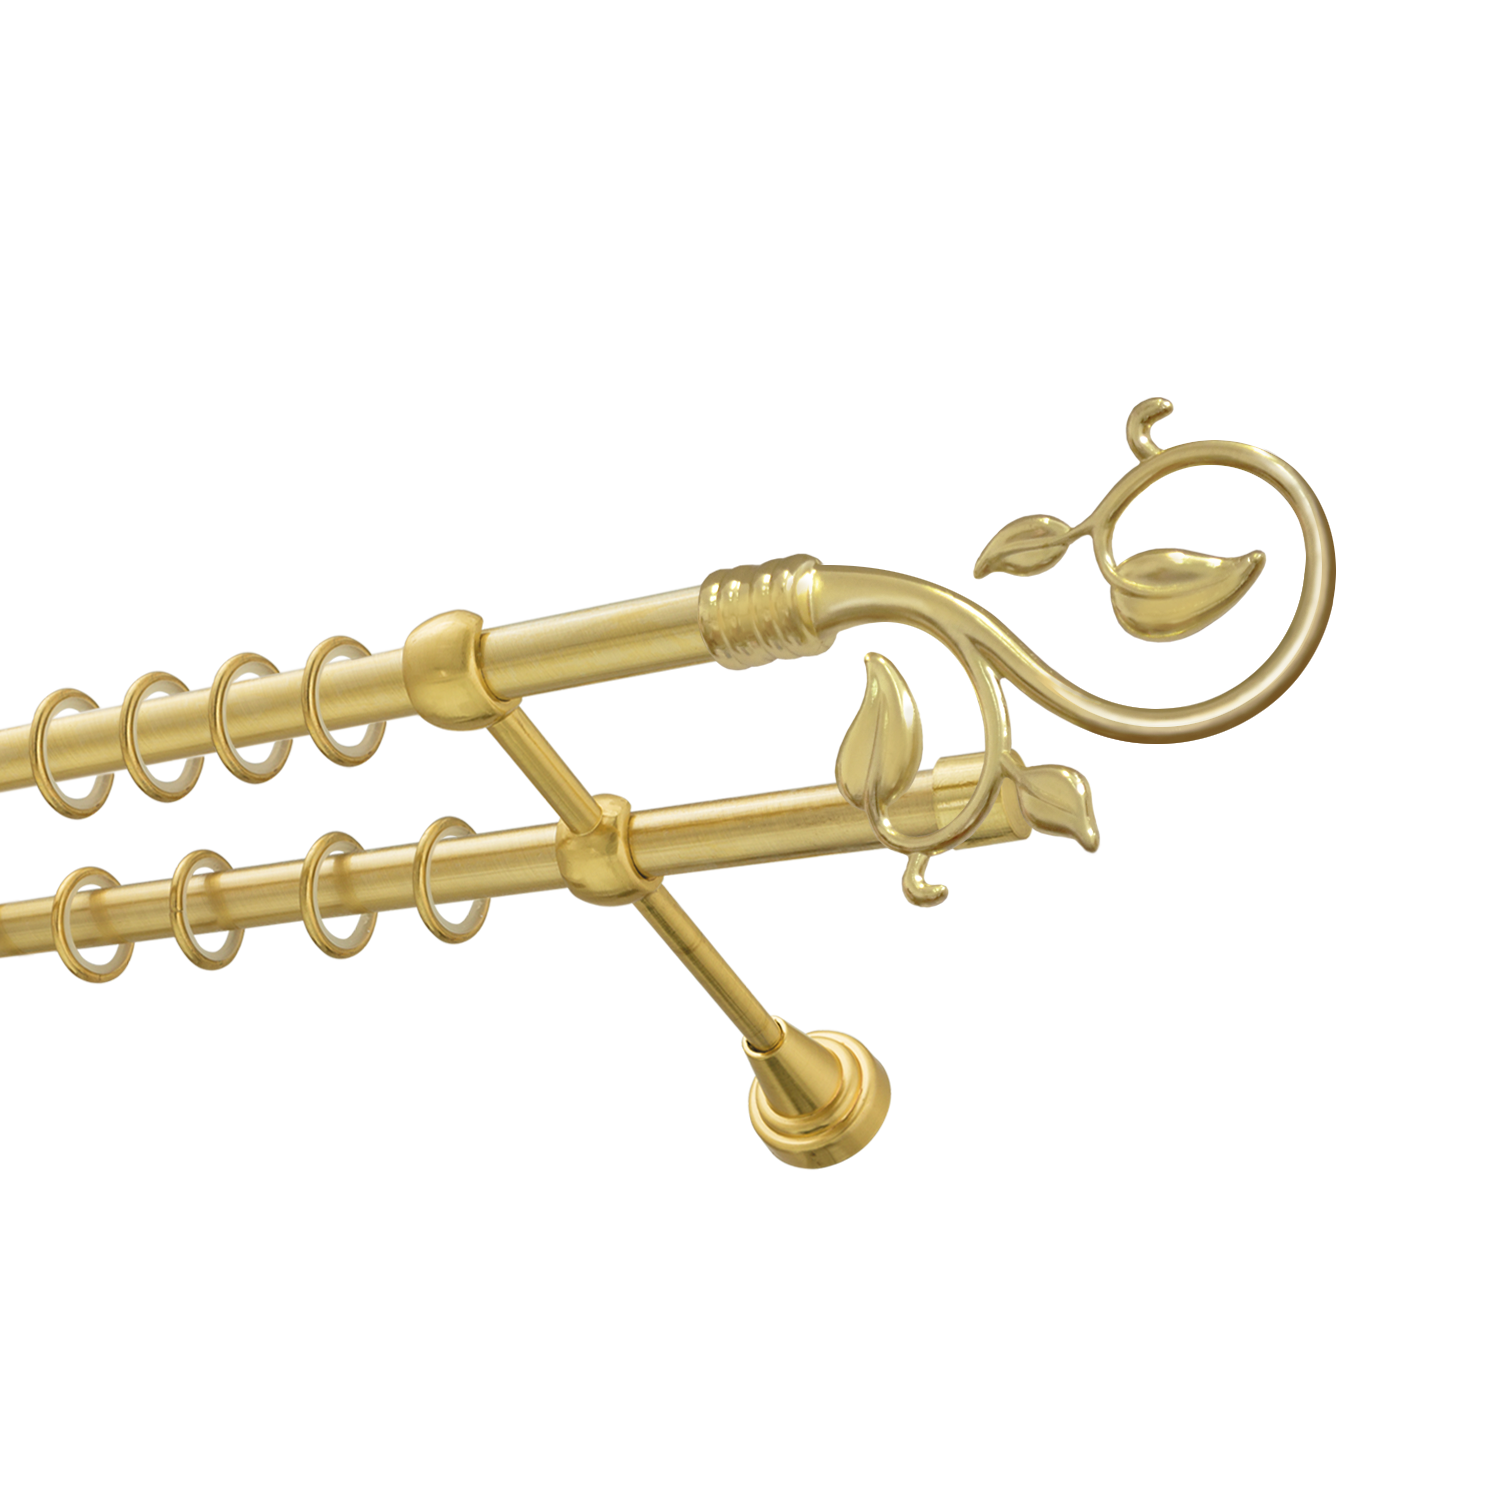 Металлический карниз для штор Амели, двухрядный 16/16 мм, золото, гладкая штанга, длина 300 см - фото Wikidecor.ru